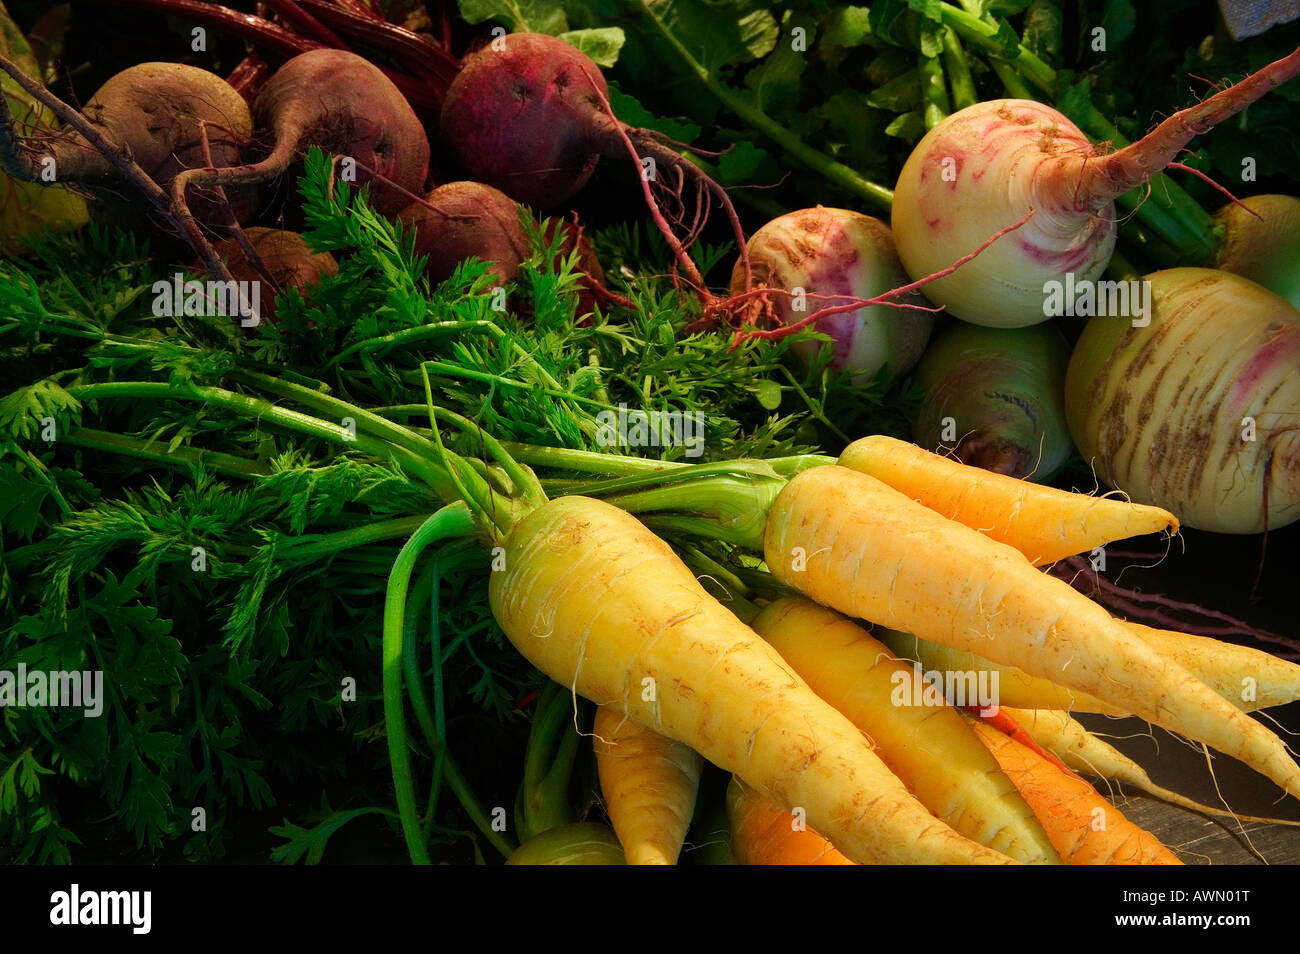 Carrots and beats Stock Photo